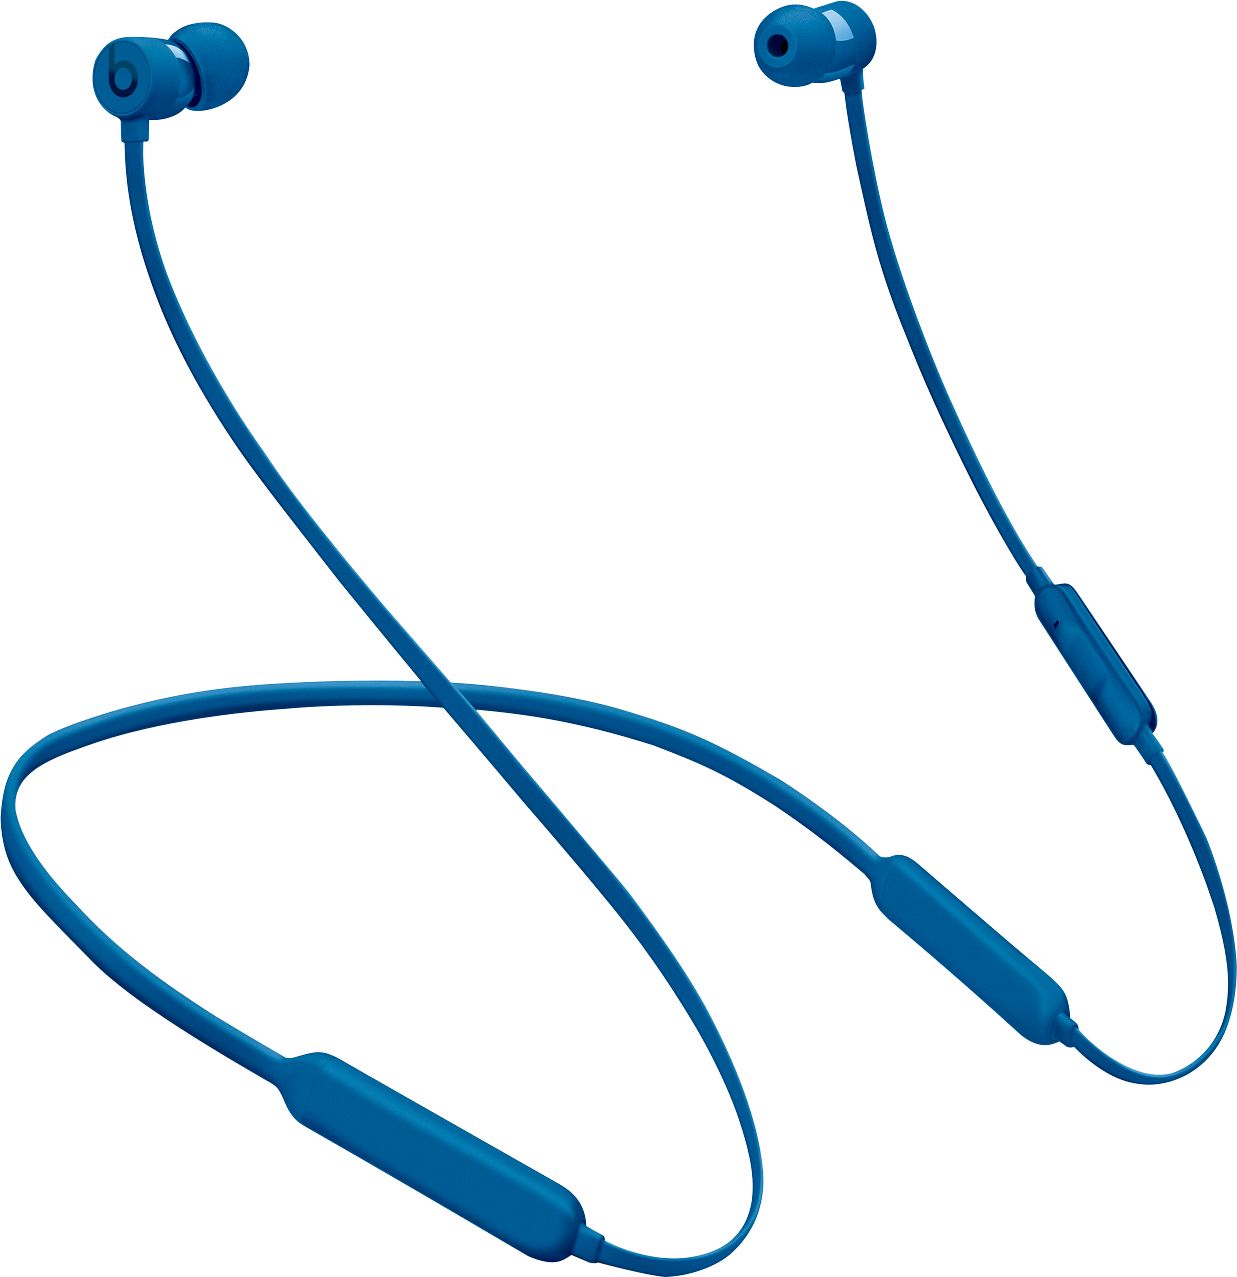 beats x wireless earphones blue